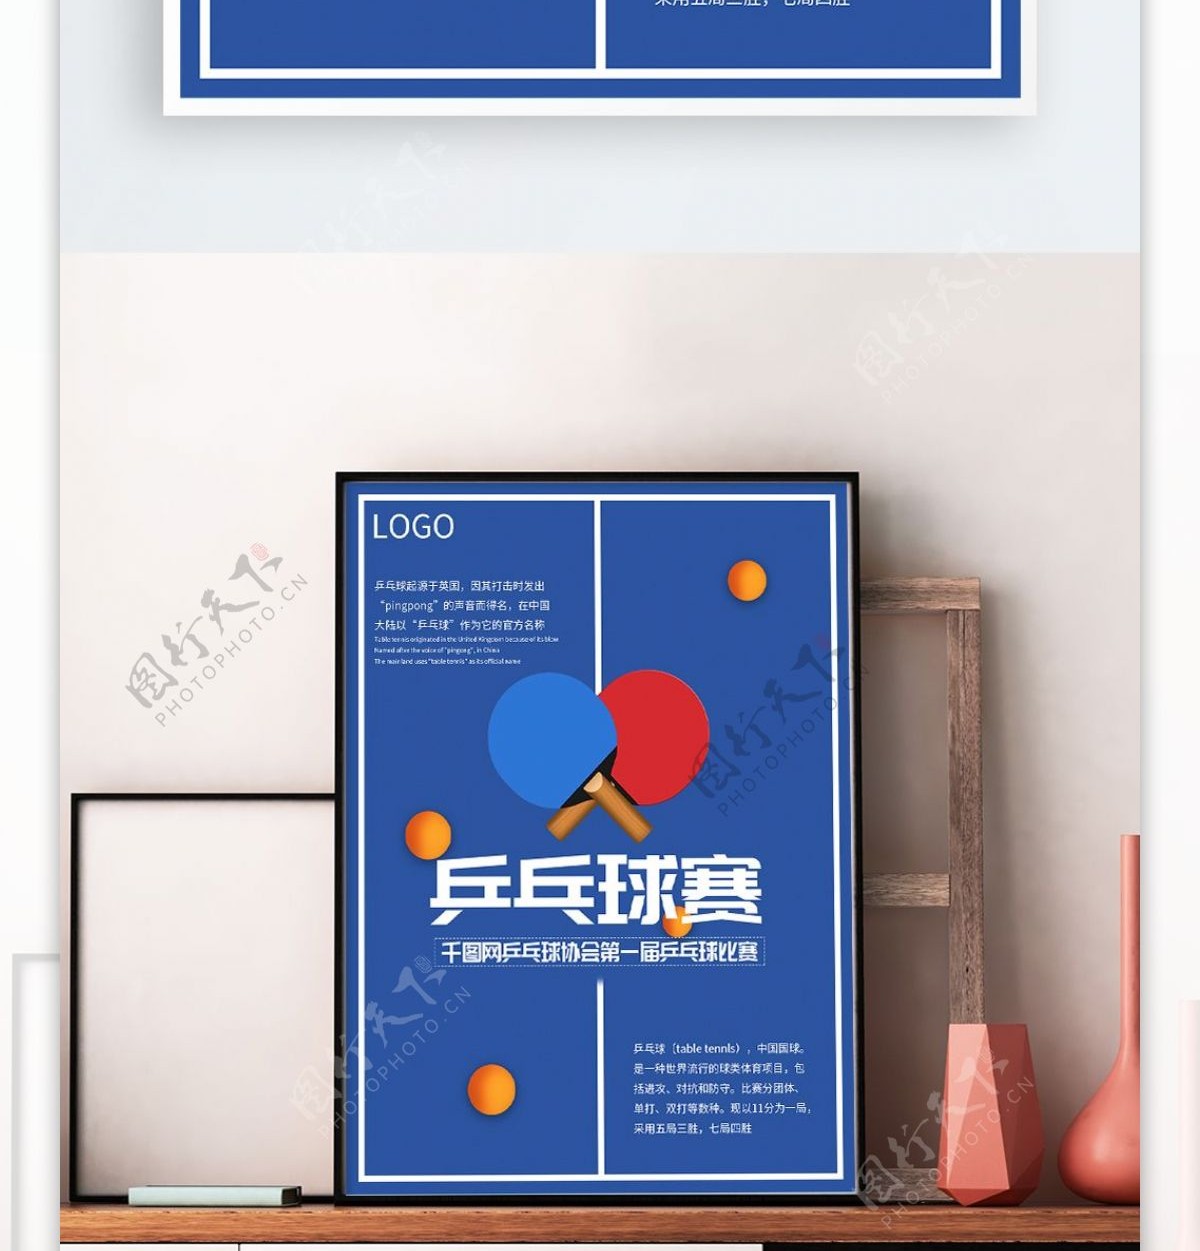 蓝色创意乒乓球赛海报设计